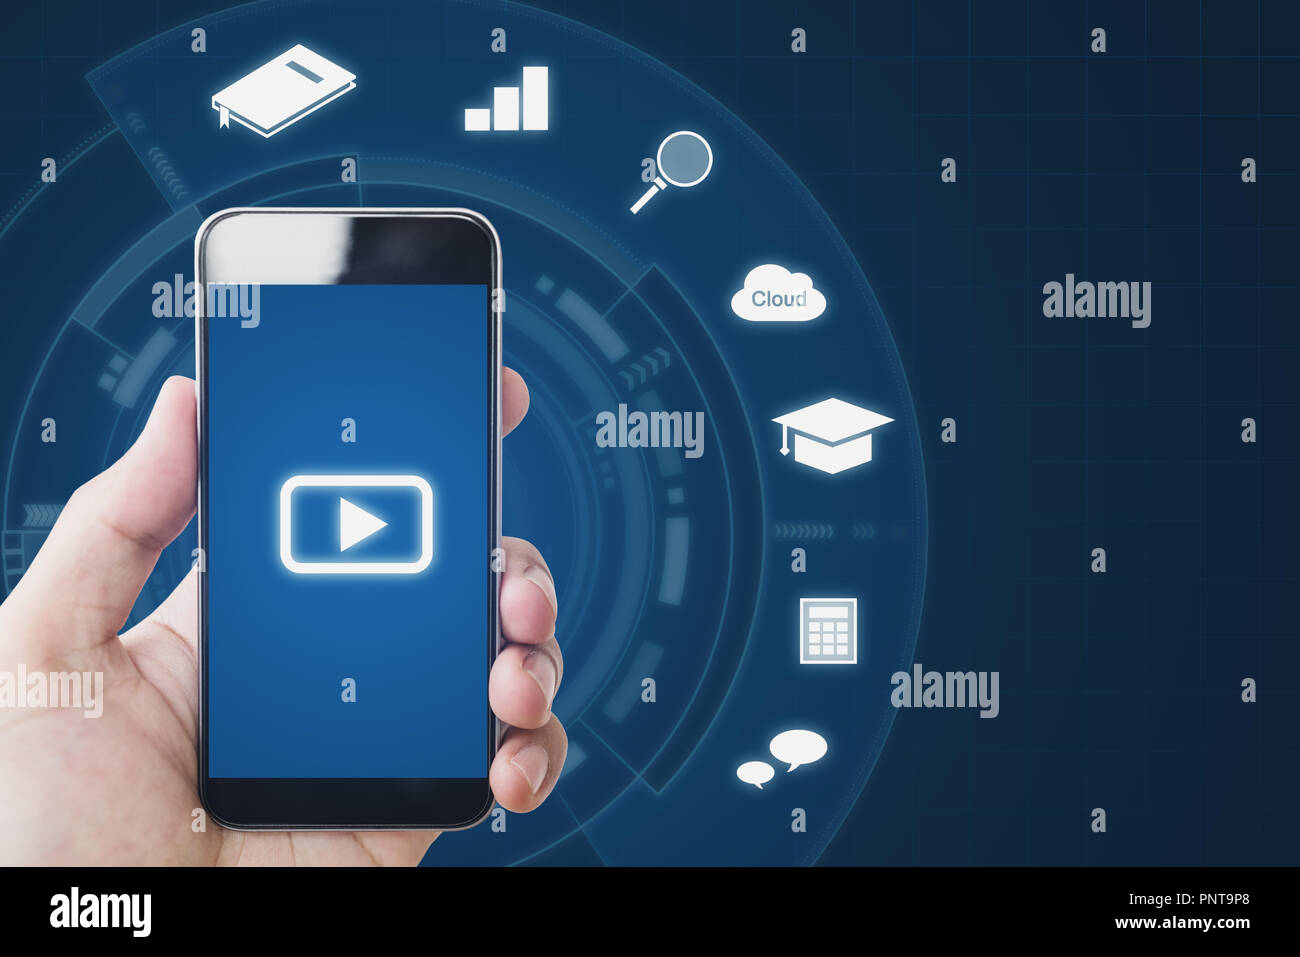 Online Medien auf mobilen Geräte, Hand, smart phone und Online Media Application Icons Stockfoto